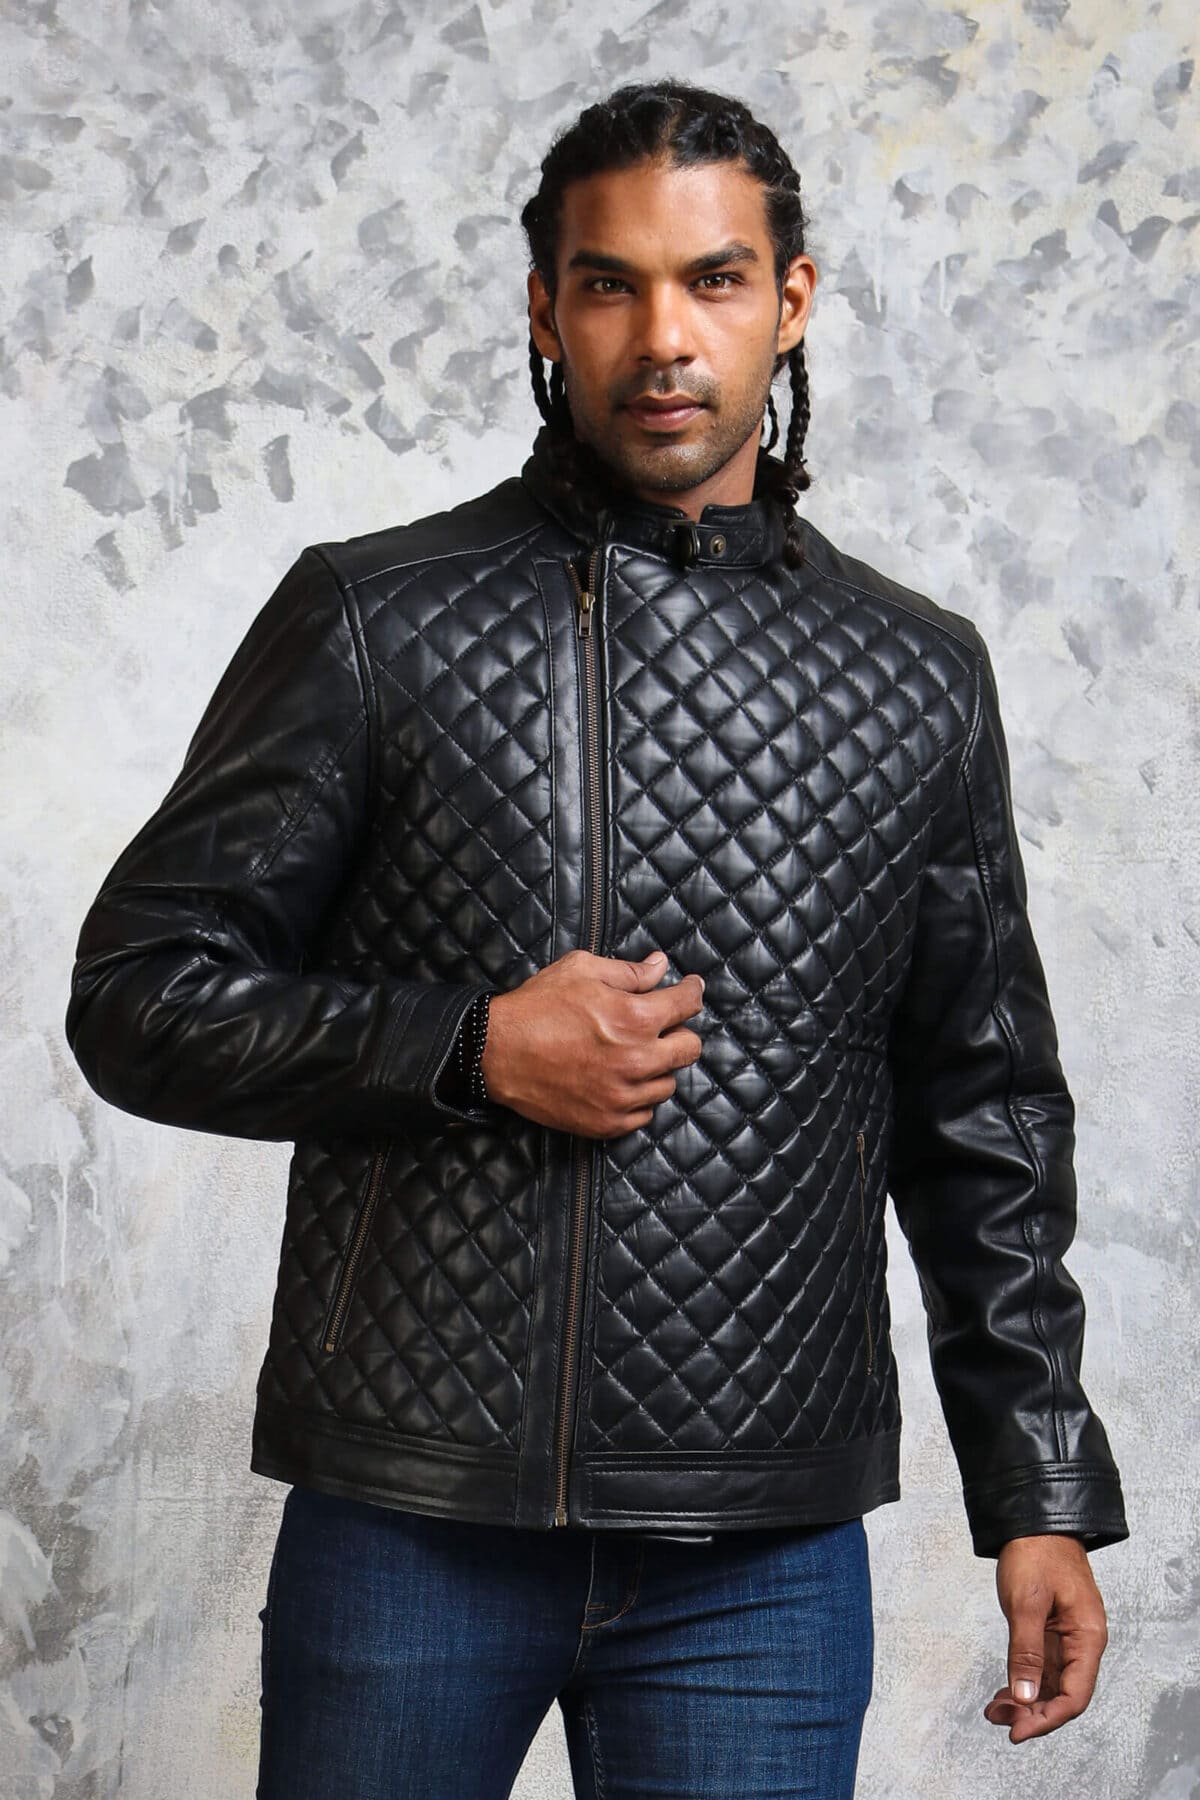 Sociale wetenschappen evenaar salaris Men's Diamond Quilted Jacket in Real Leather Black Winter Outfit